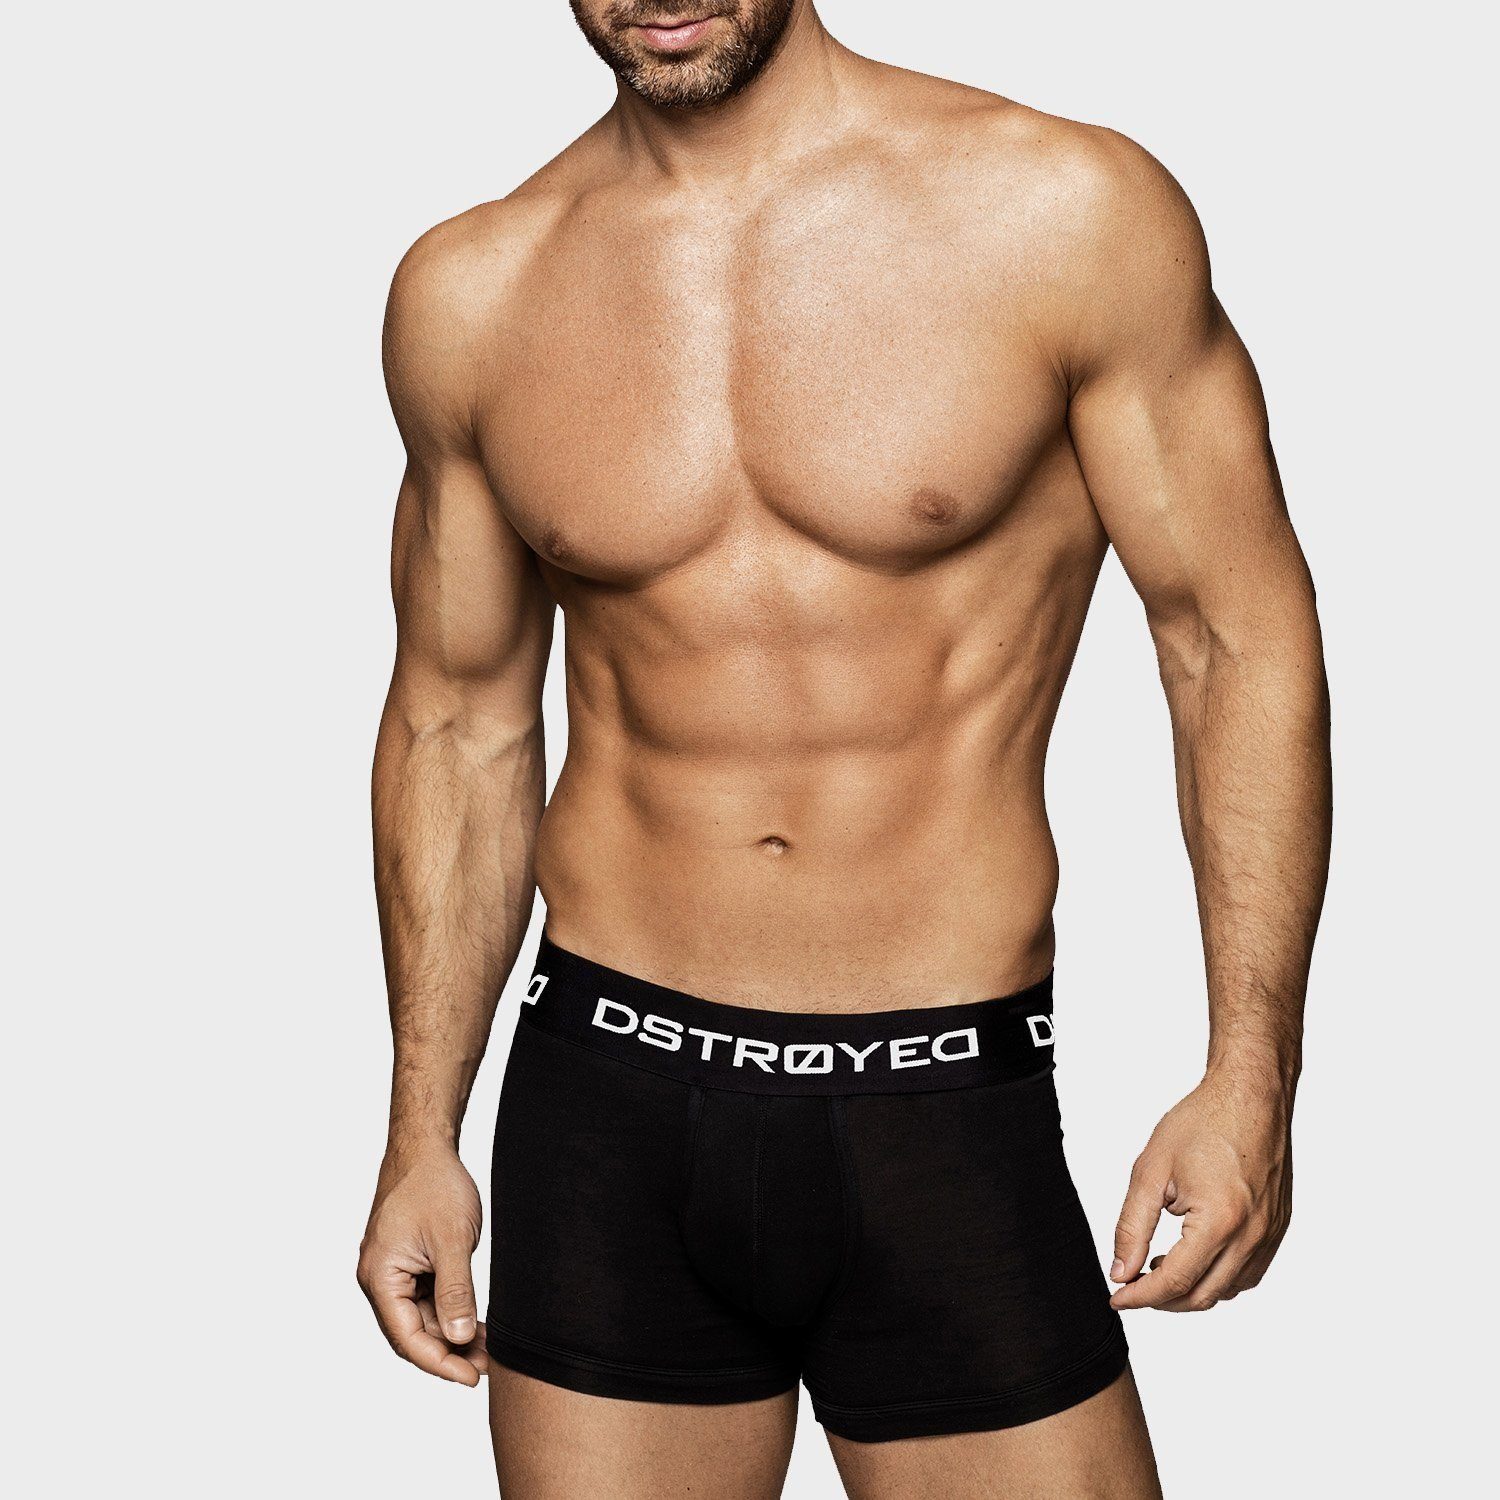 DSTROYED Boxershorts Herren (Sparpack, Qualität Premium Baumwolle 7XL 606b-mehrfarbig - 6er S Pack) Unterhosen perfekte Passform Männer